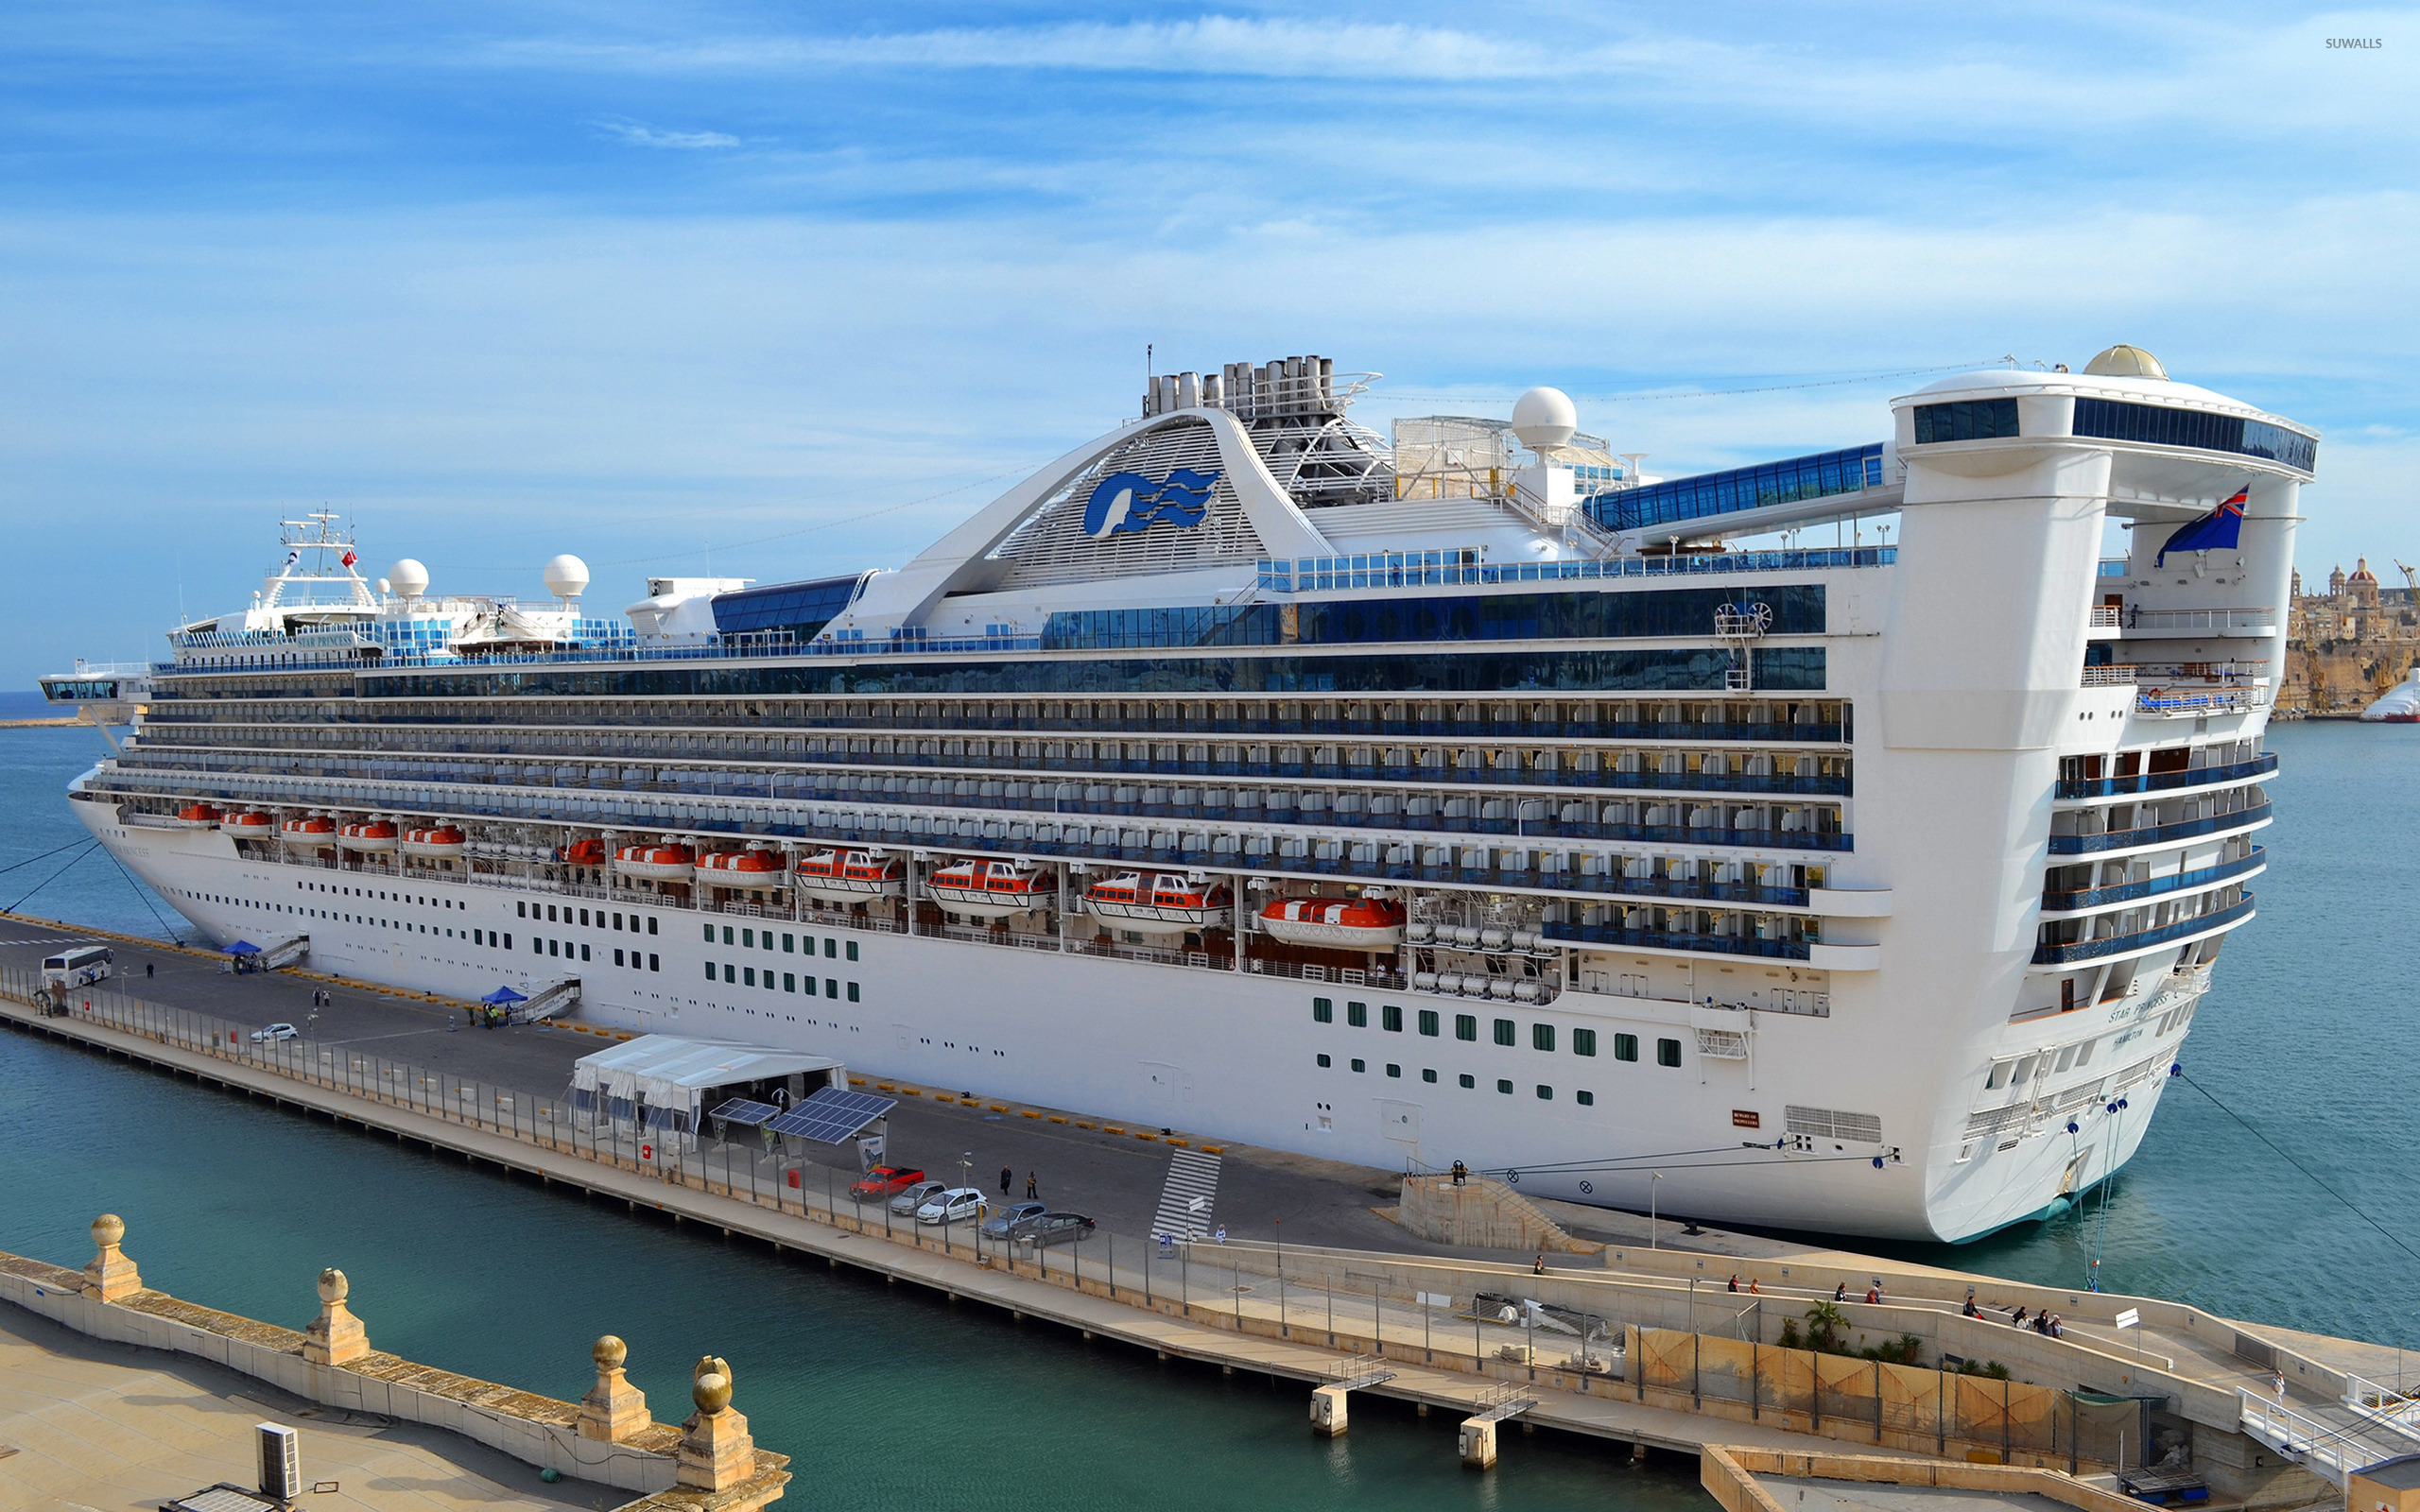 cruise ships in ny harbor today